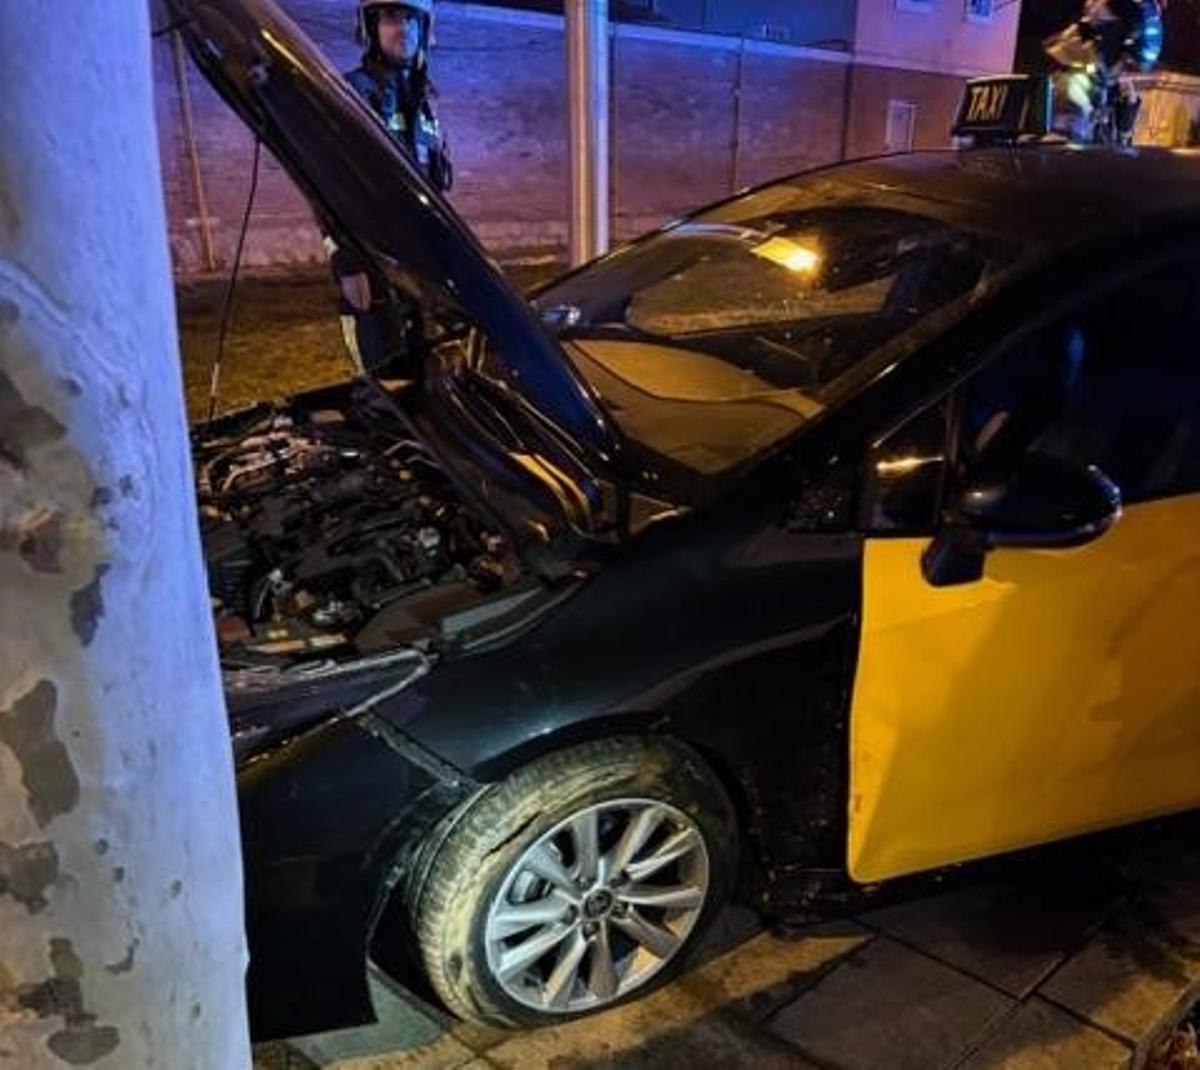 El taxi destrozado tras ser robado en Barcelona